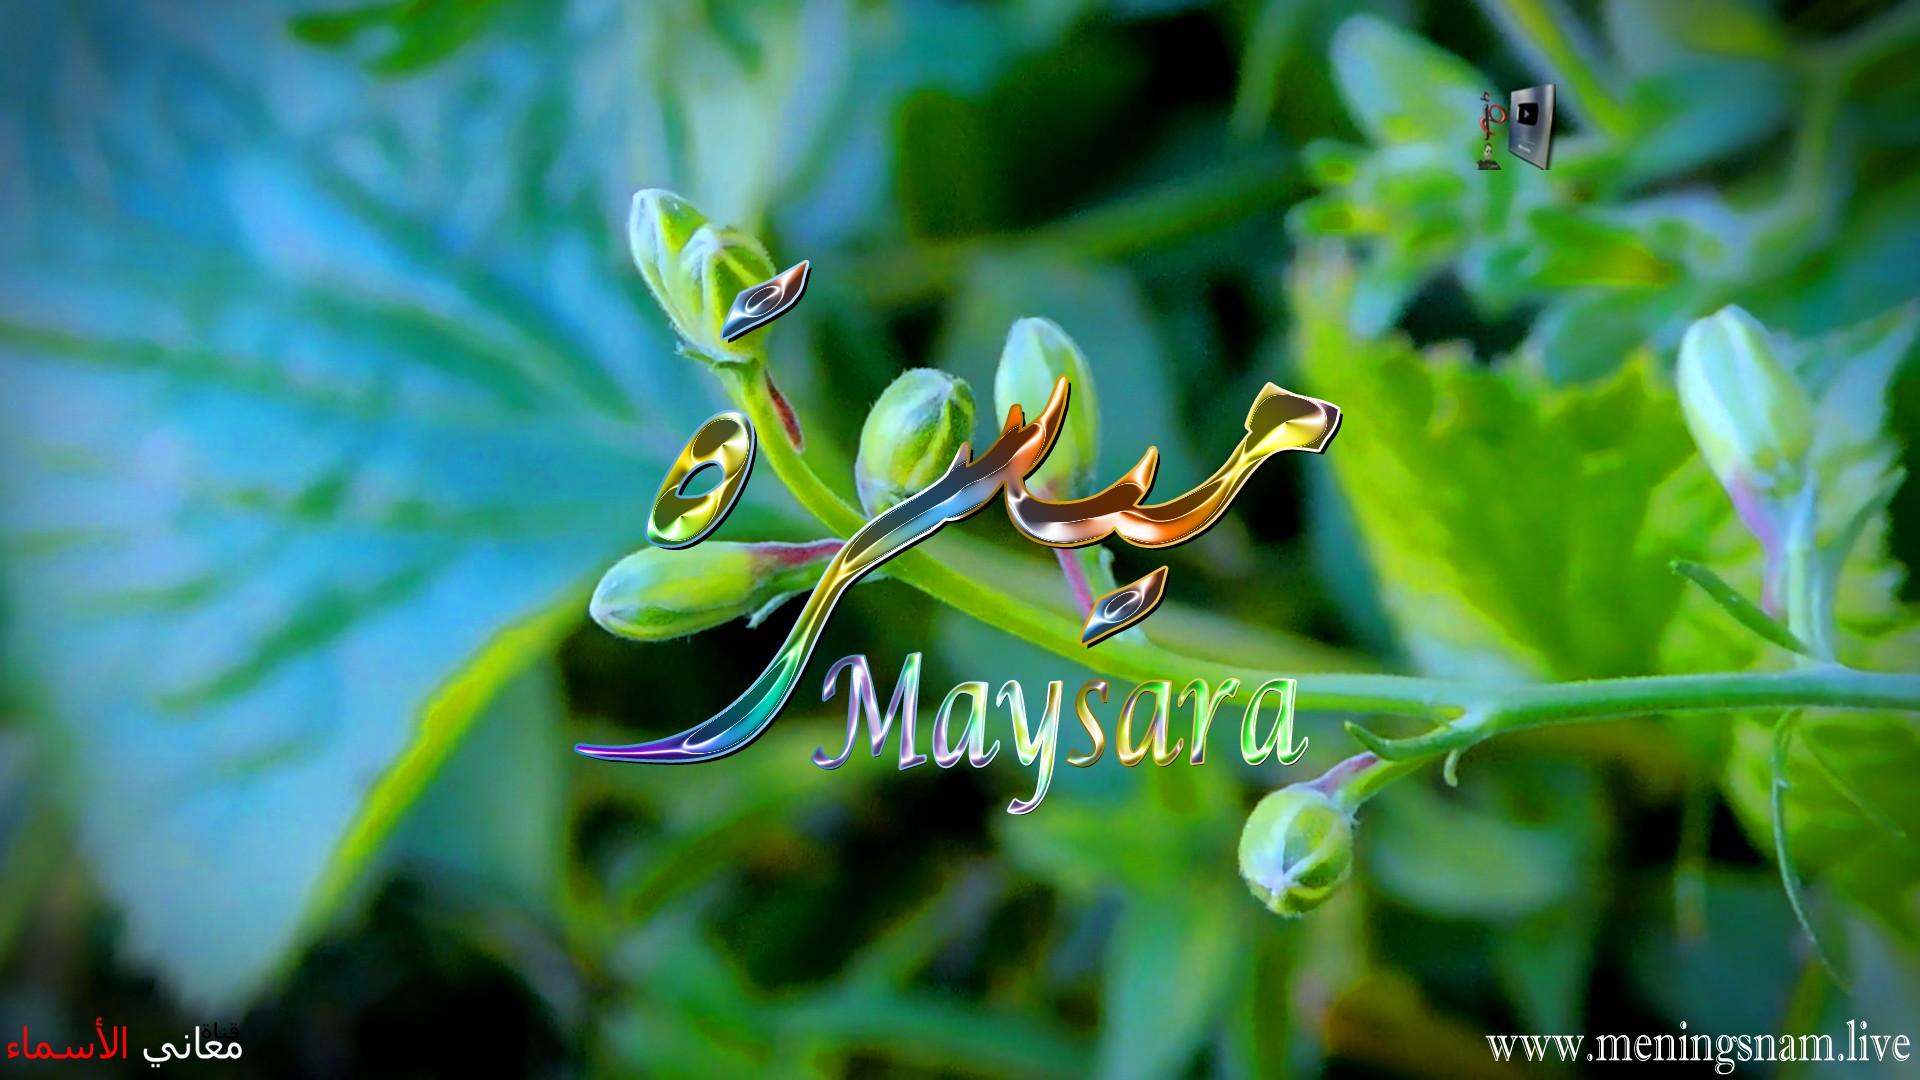 معنى اسم, ميسرة, وصفات حاملة, و حامل, هذا الاسم, Maysara,